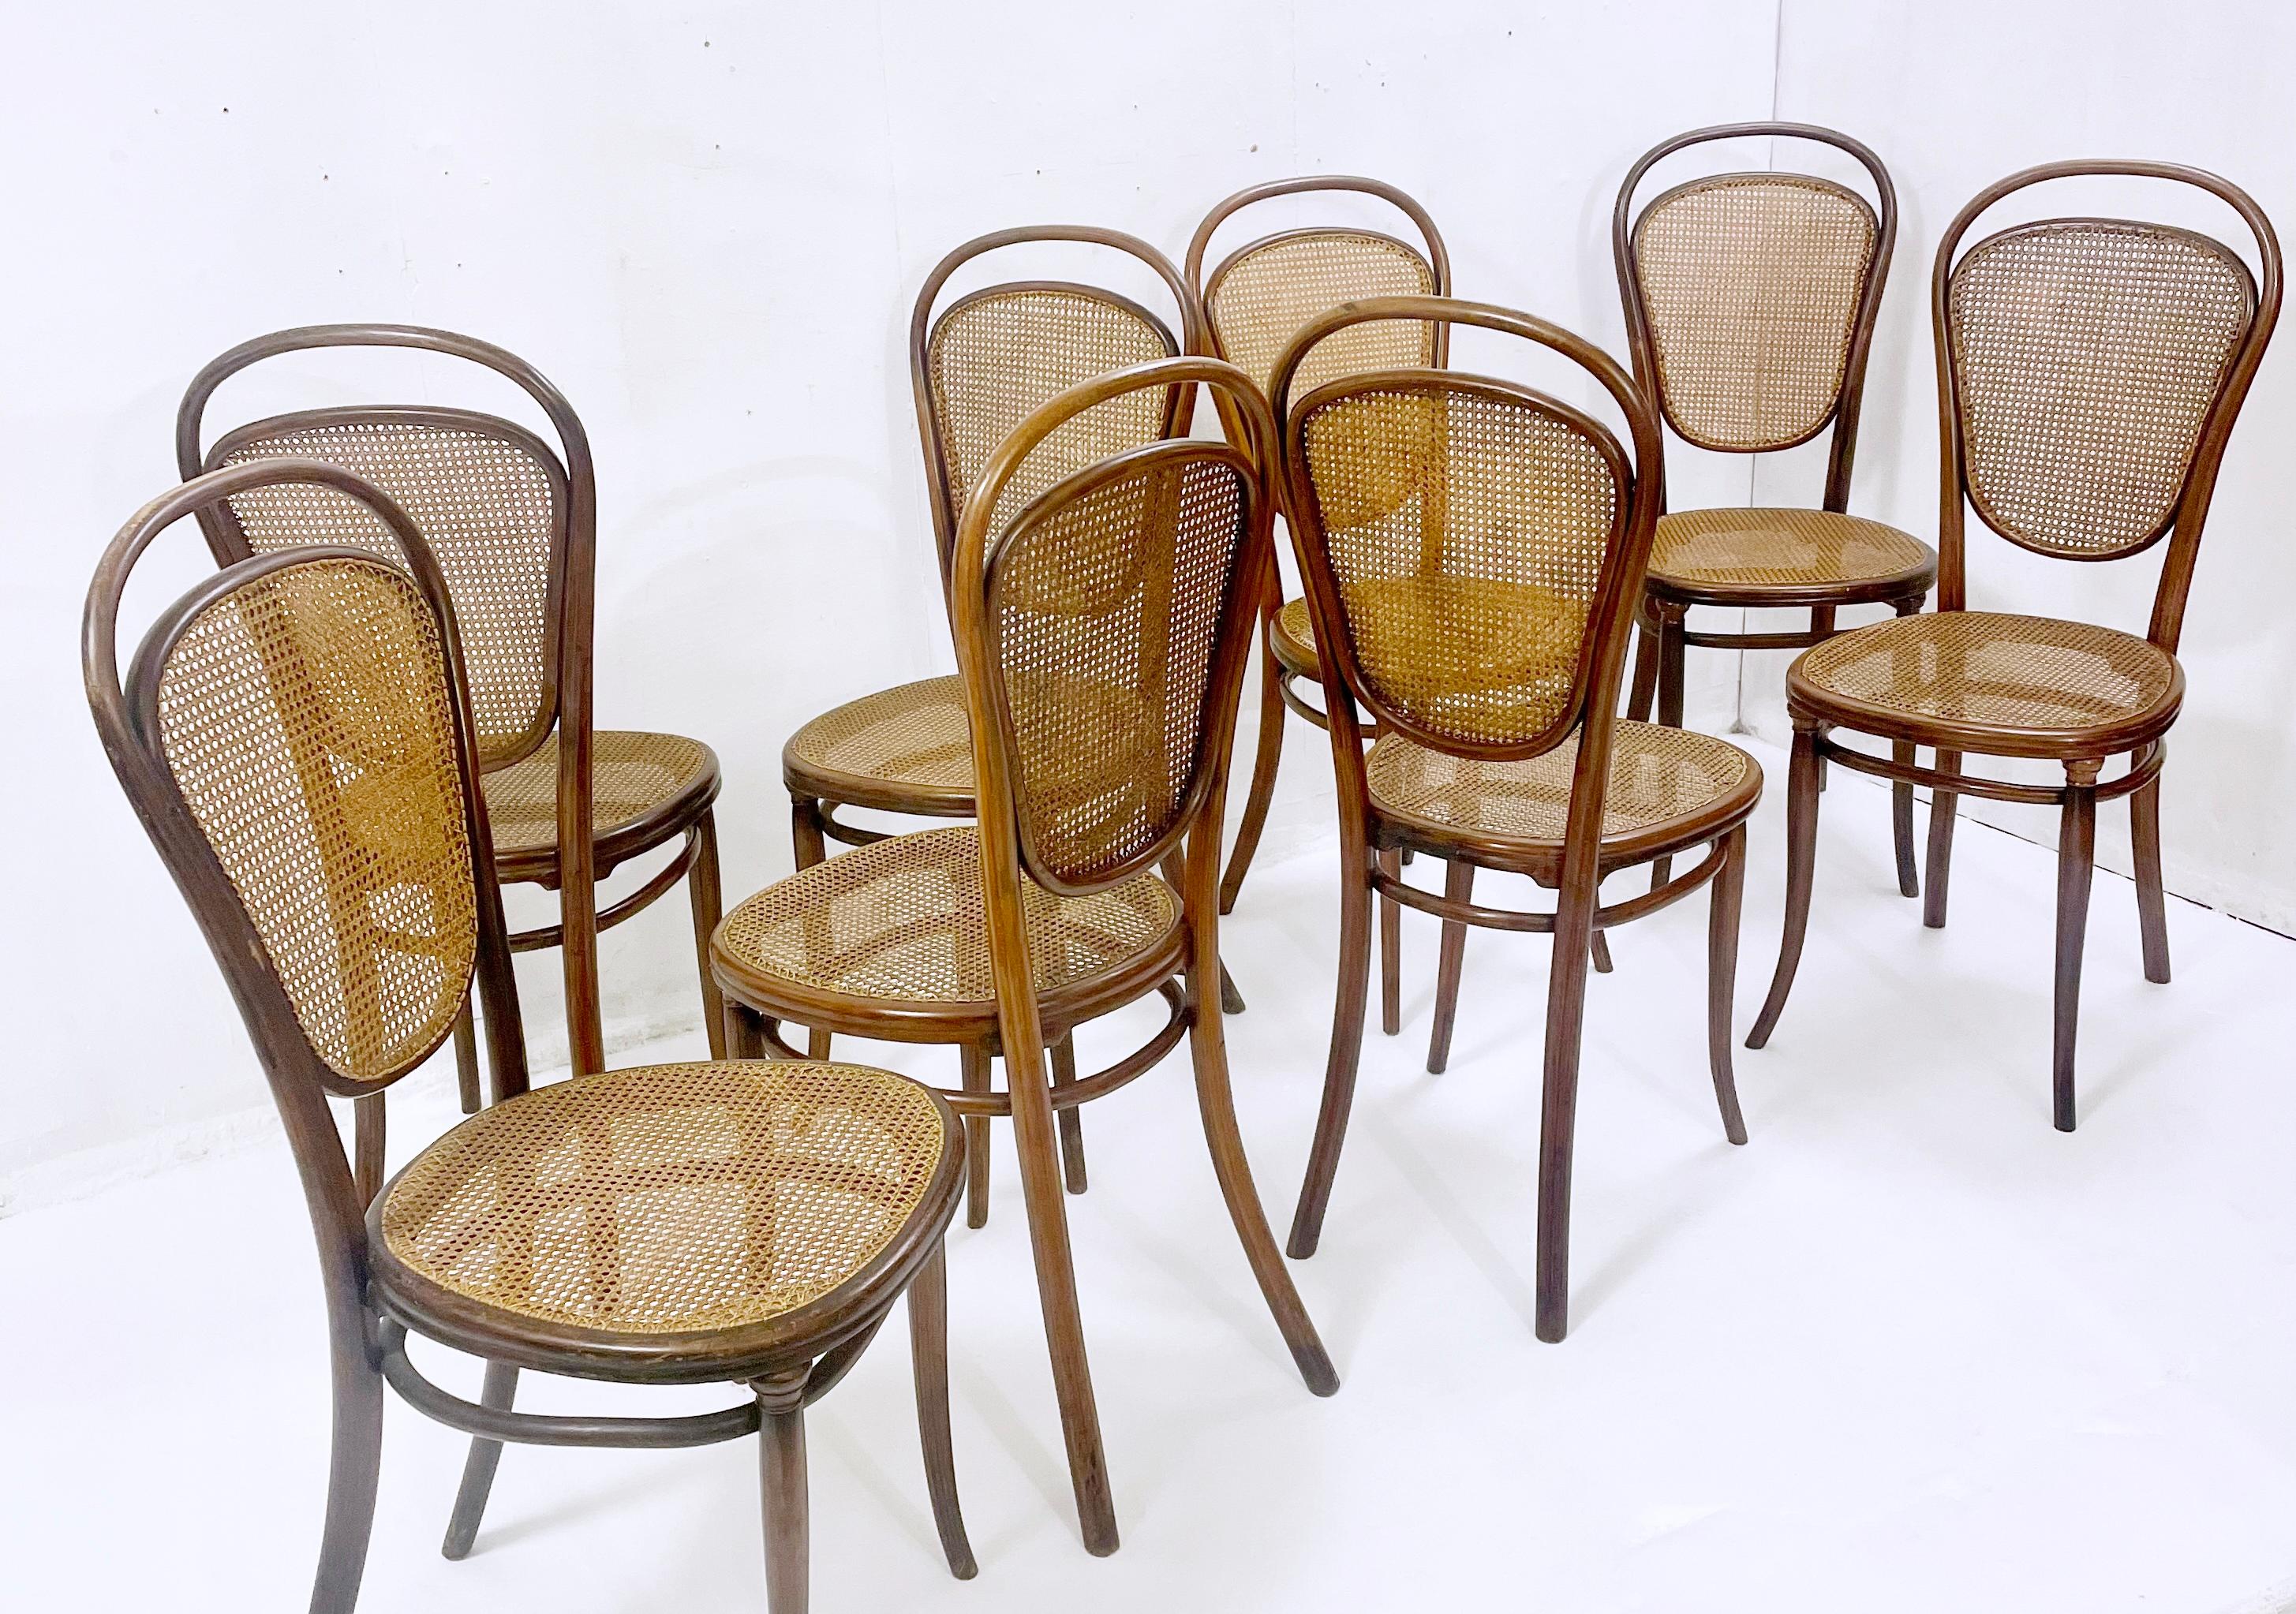 Ensemble de 8 chaises à cannes en bois courbé par Thonet - Autriche années 1930.